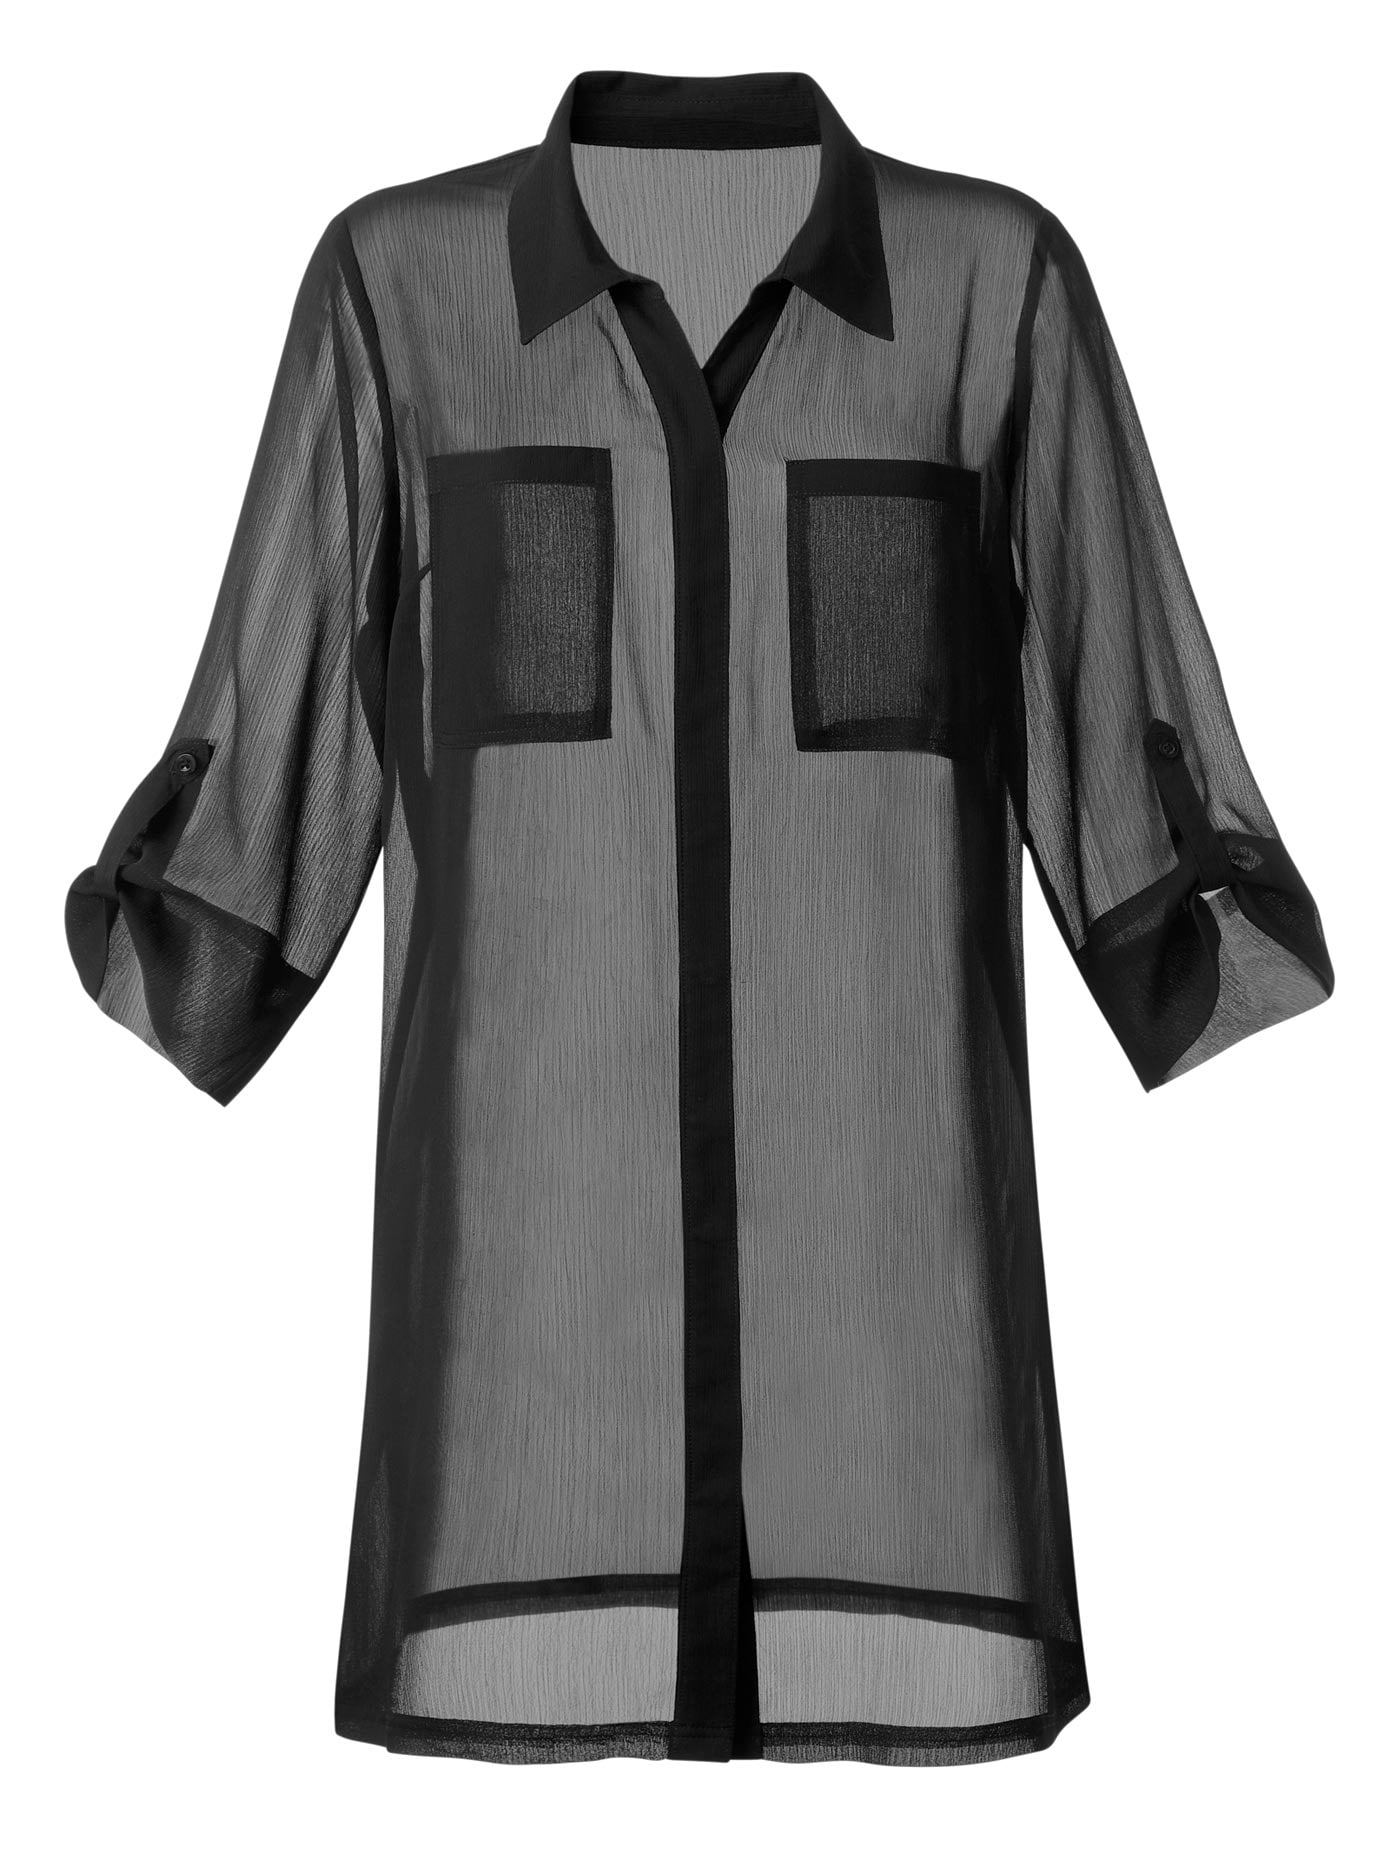 Kimono Blusen ▷ Angesagte Bluse im Kimono-Stil kaufen | BAUR